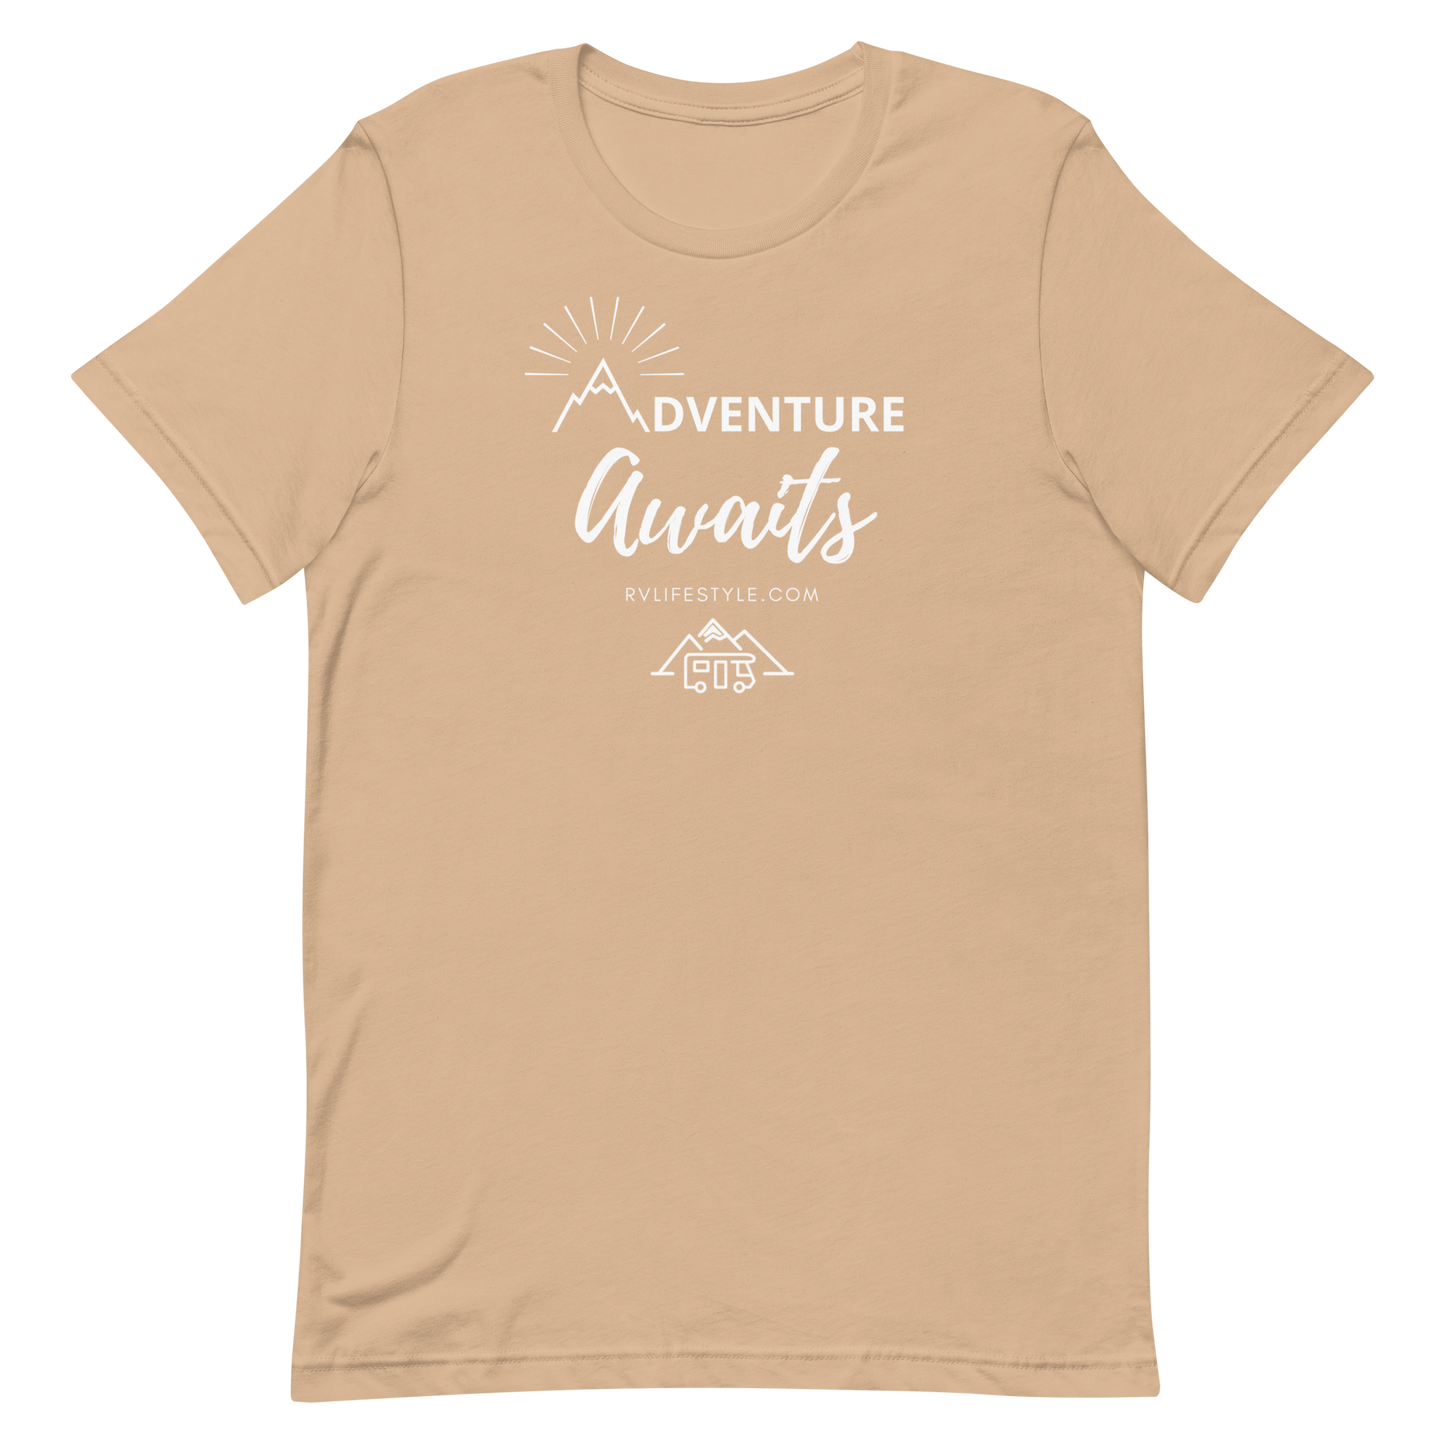 Adventure Awaits - Short-Sleeve Men and Women's T-Shirt